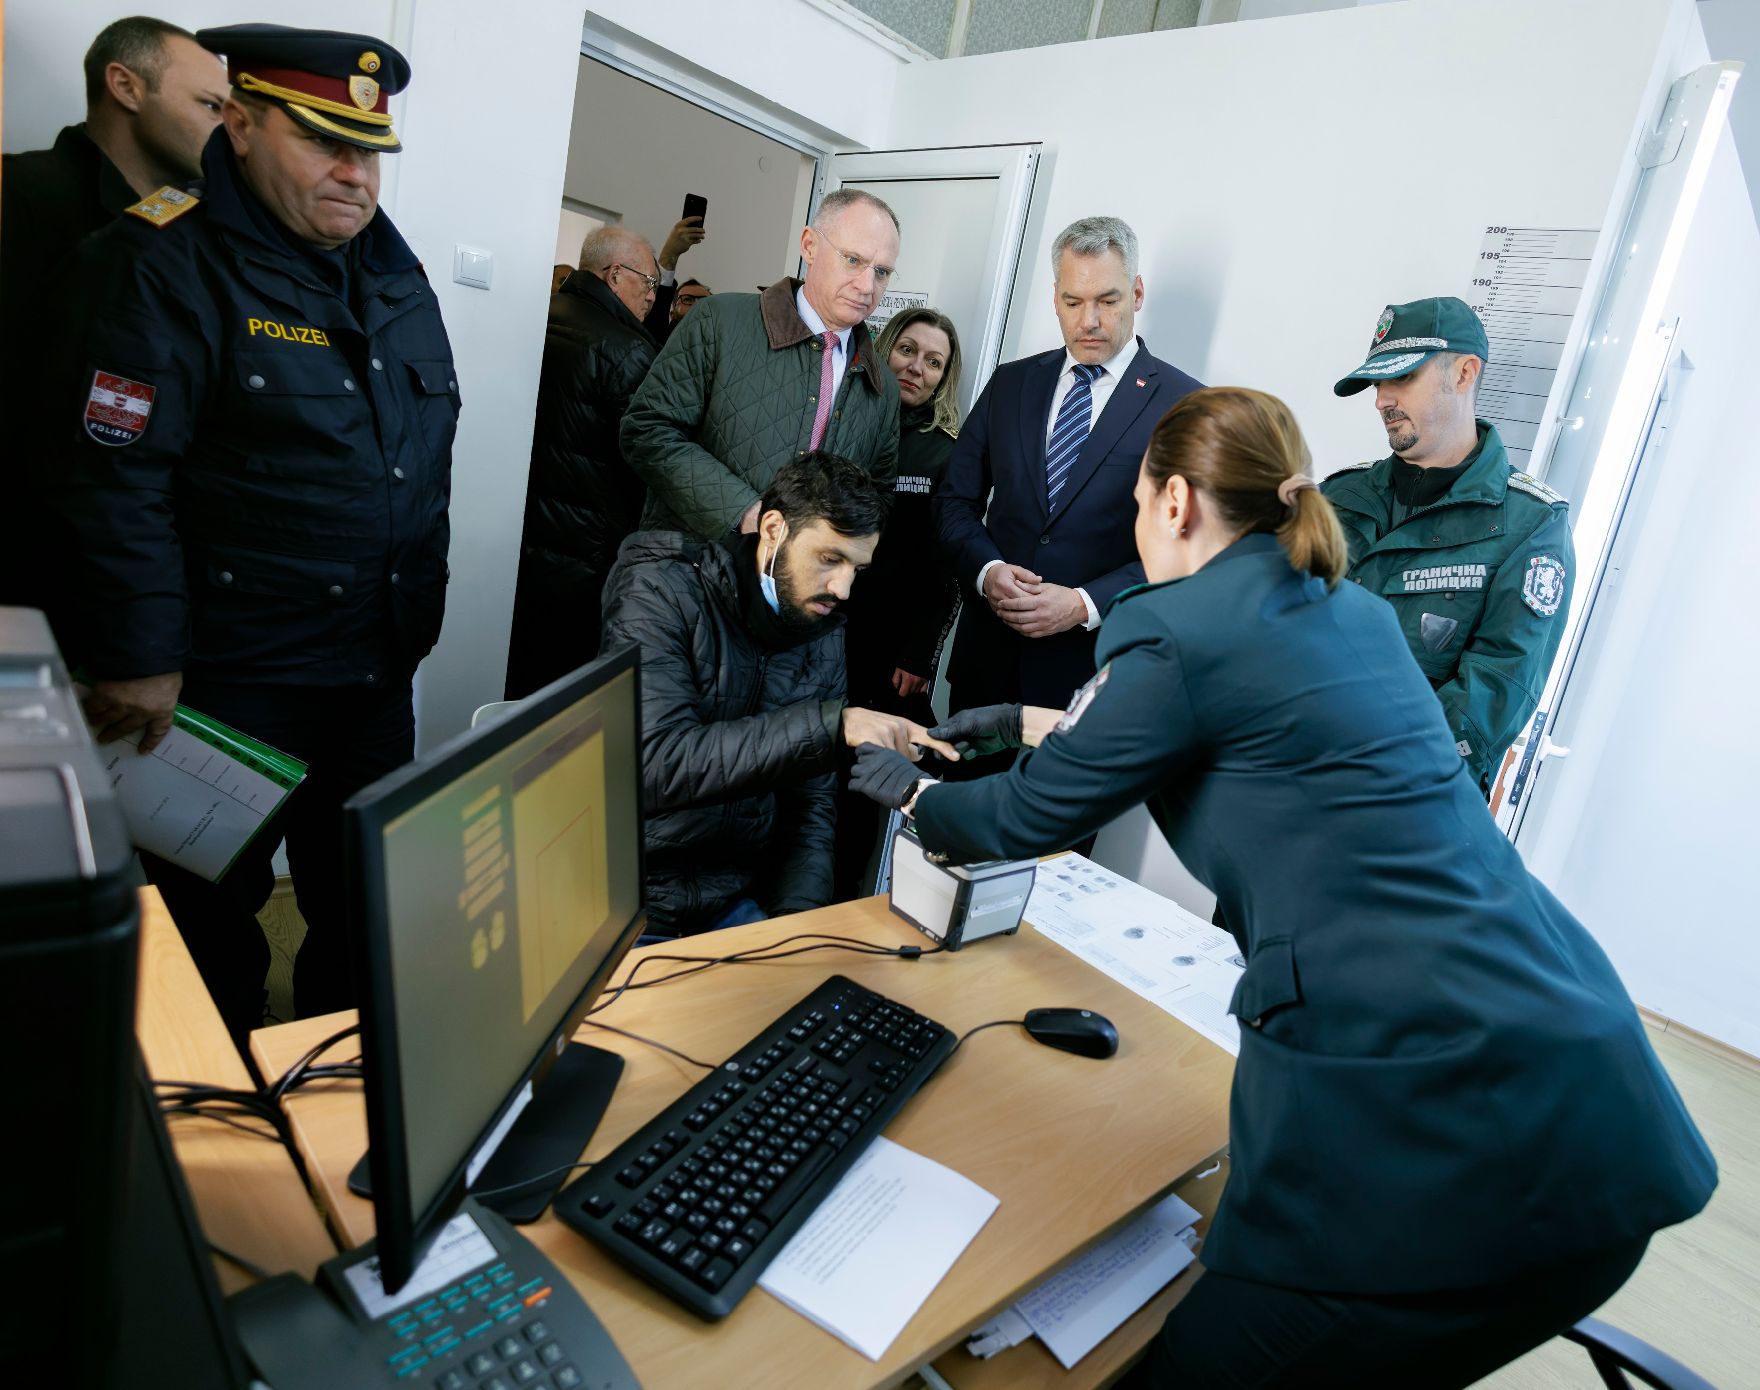 Am 23. Jänner 2023 reiste Bundeskanzler Karl Nehammer gemeinsam mit Innenminister Gerhard Karner zu einem Arbeitsbesuch nach Bulgarien. Im Bild bei der Besichtigung des regionalen Koordinationszentrum der Grenzpolizei.